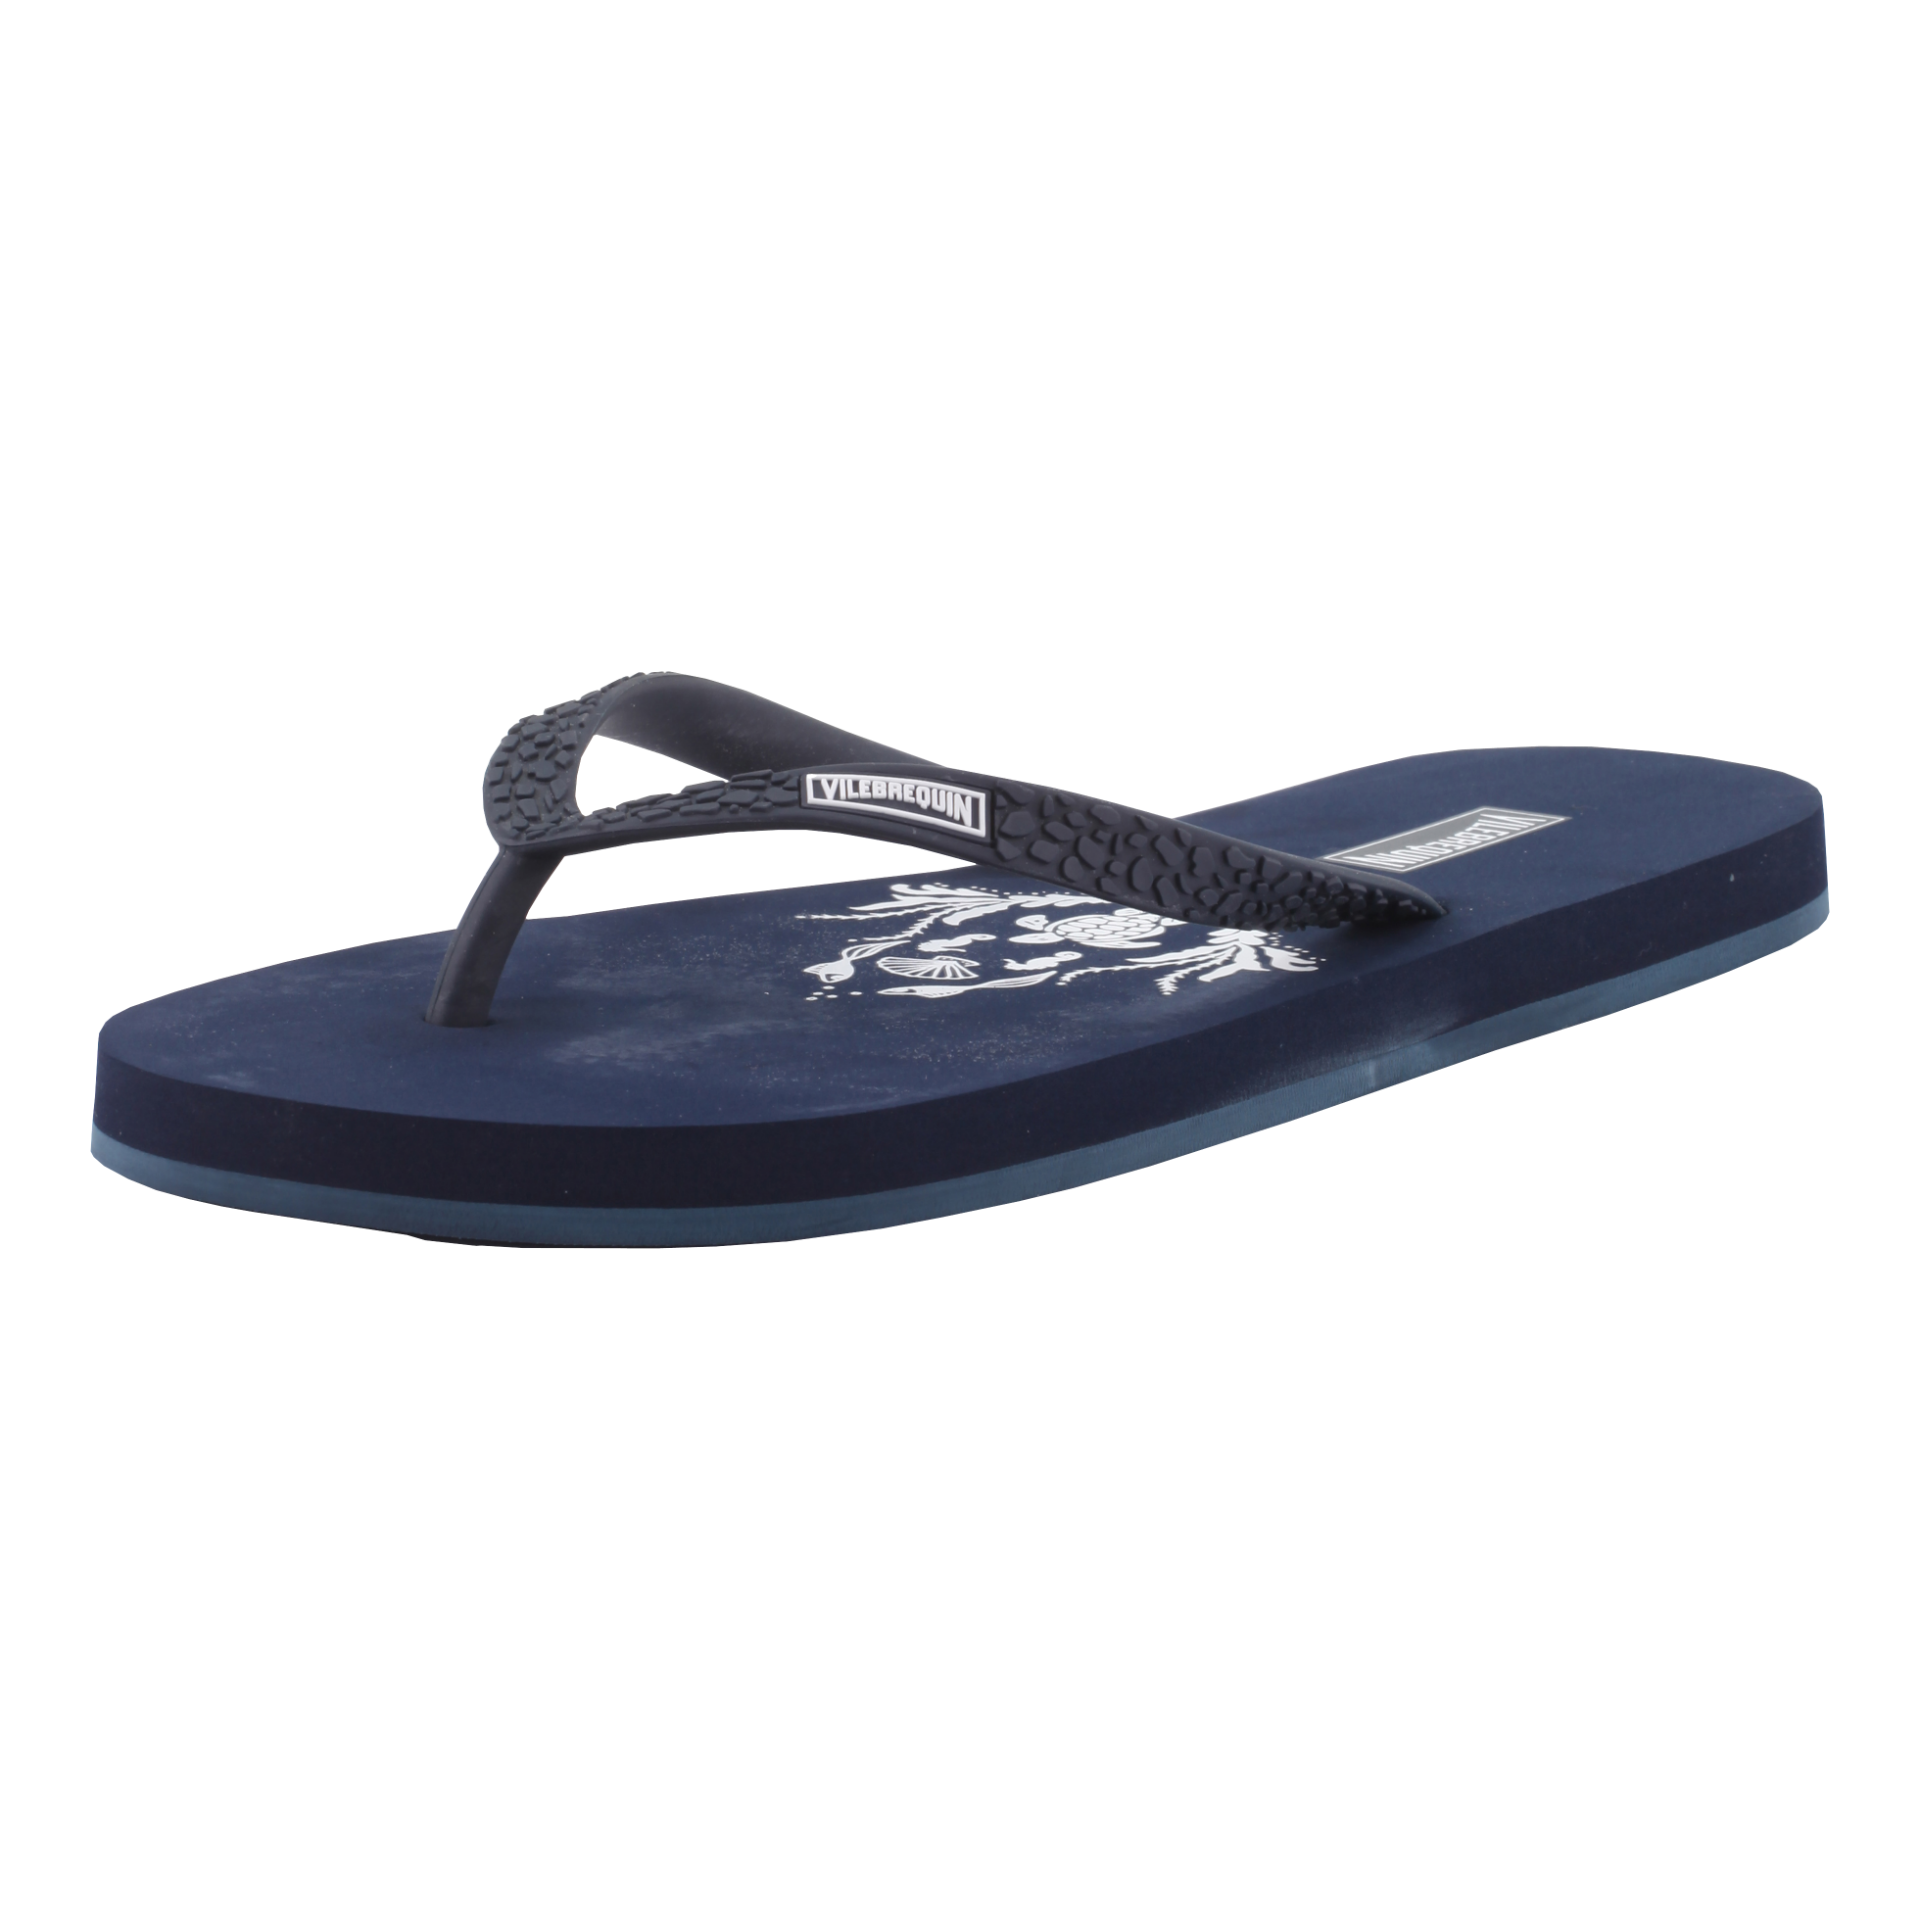 VILEBREQUIN Flip Flops Navy - Authentic & New - Size 4 / 5 - RRP Â£65+ ! - Image 3 of 5